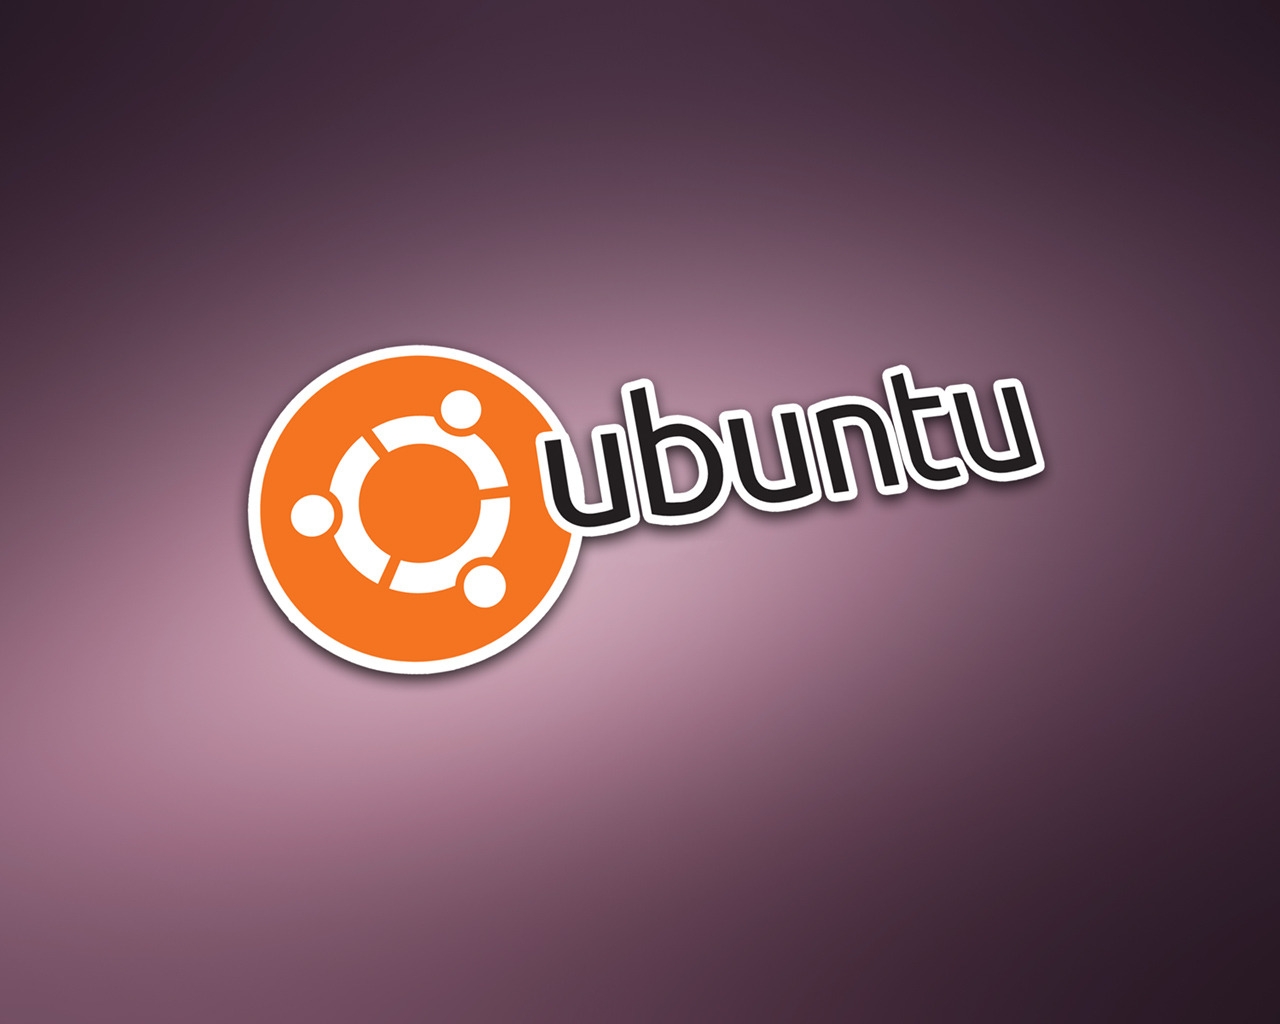 Ubuntu Modern Logo for 1280 x 1024 resolution